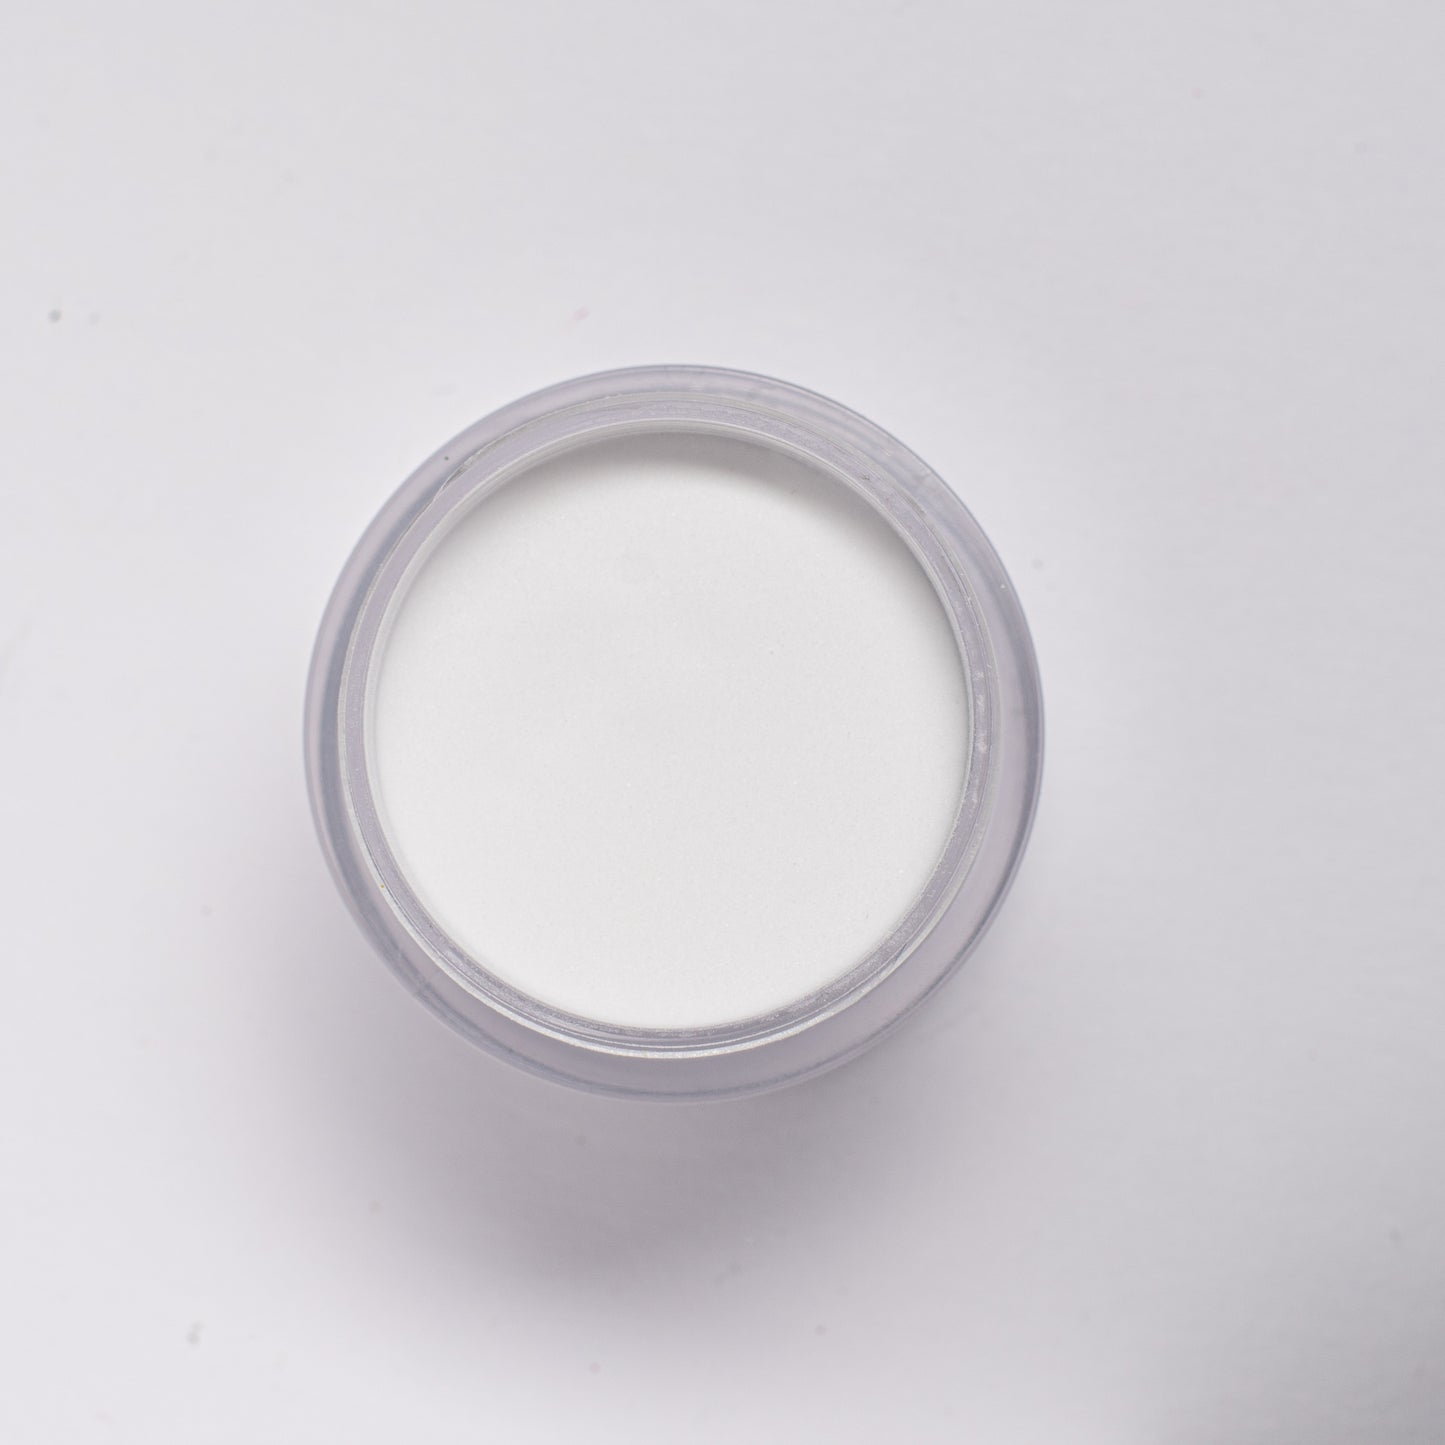 Pixie Soft White Powder  -  2 in 1 Dip & Acrylic Powder (2oz)